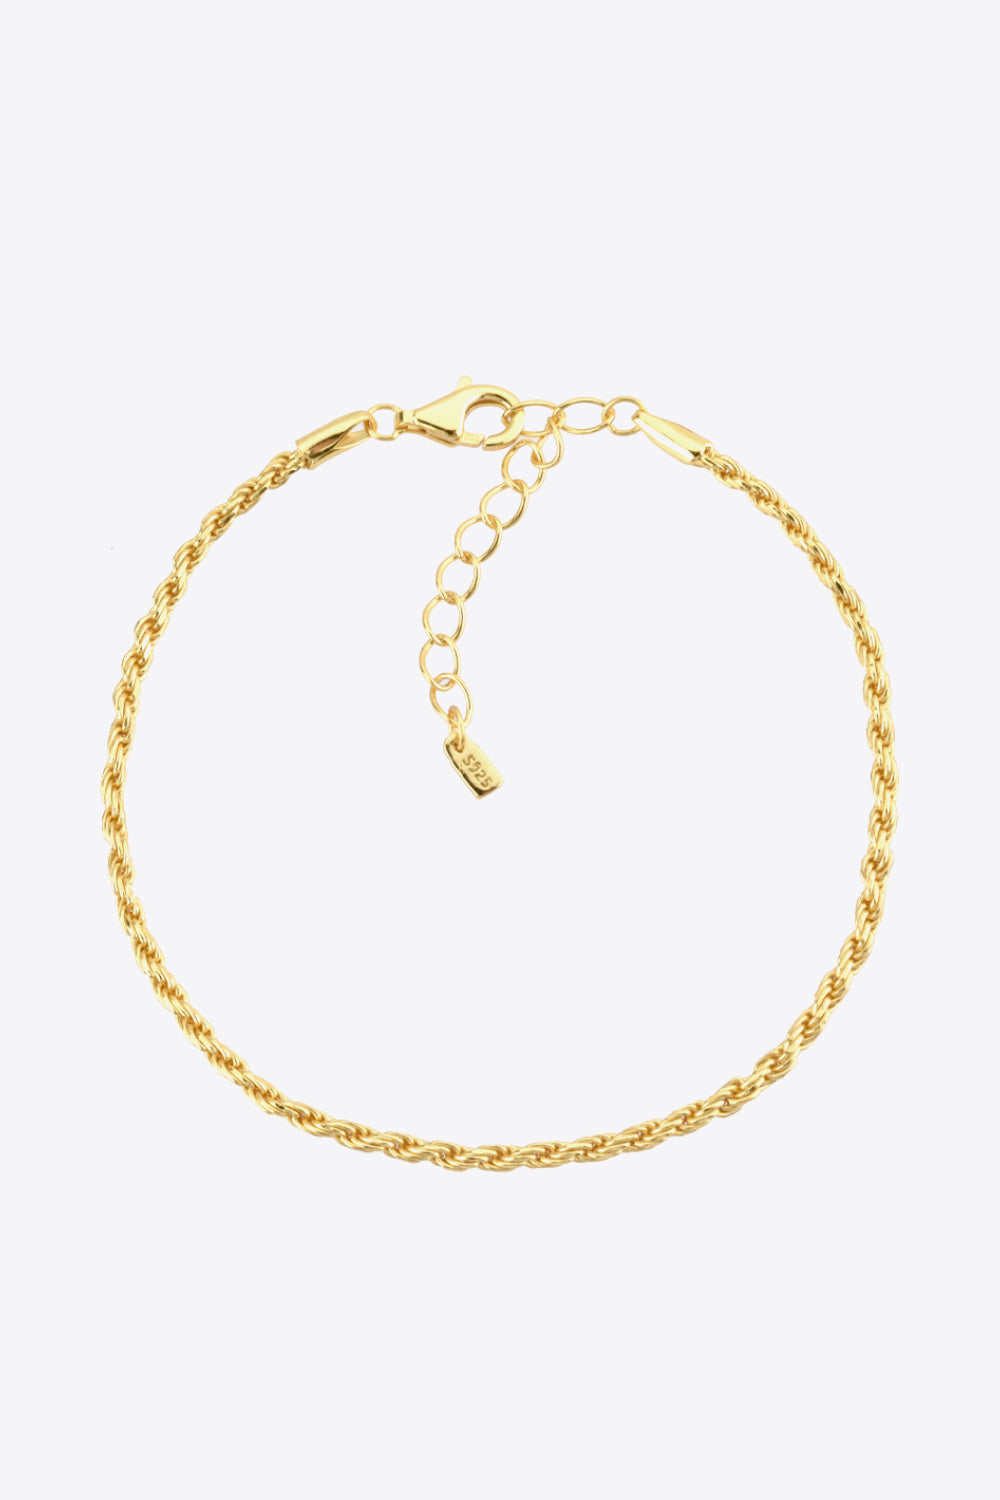 925 Sterling Silver Twisted Bracelet - Gold / One Size - Women’s Jewelry - Bracelets - 4 - 2024